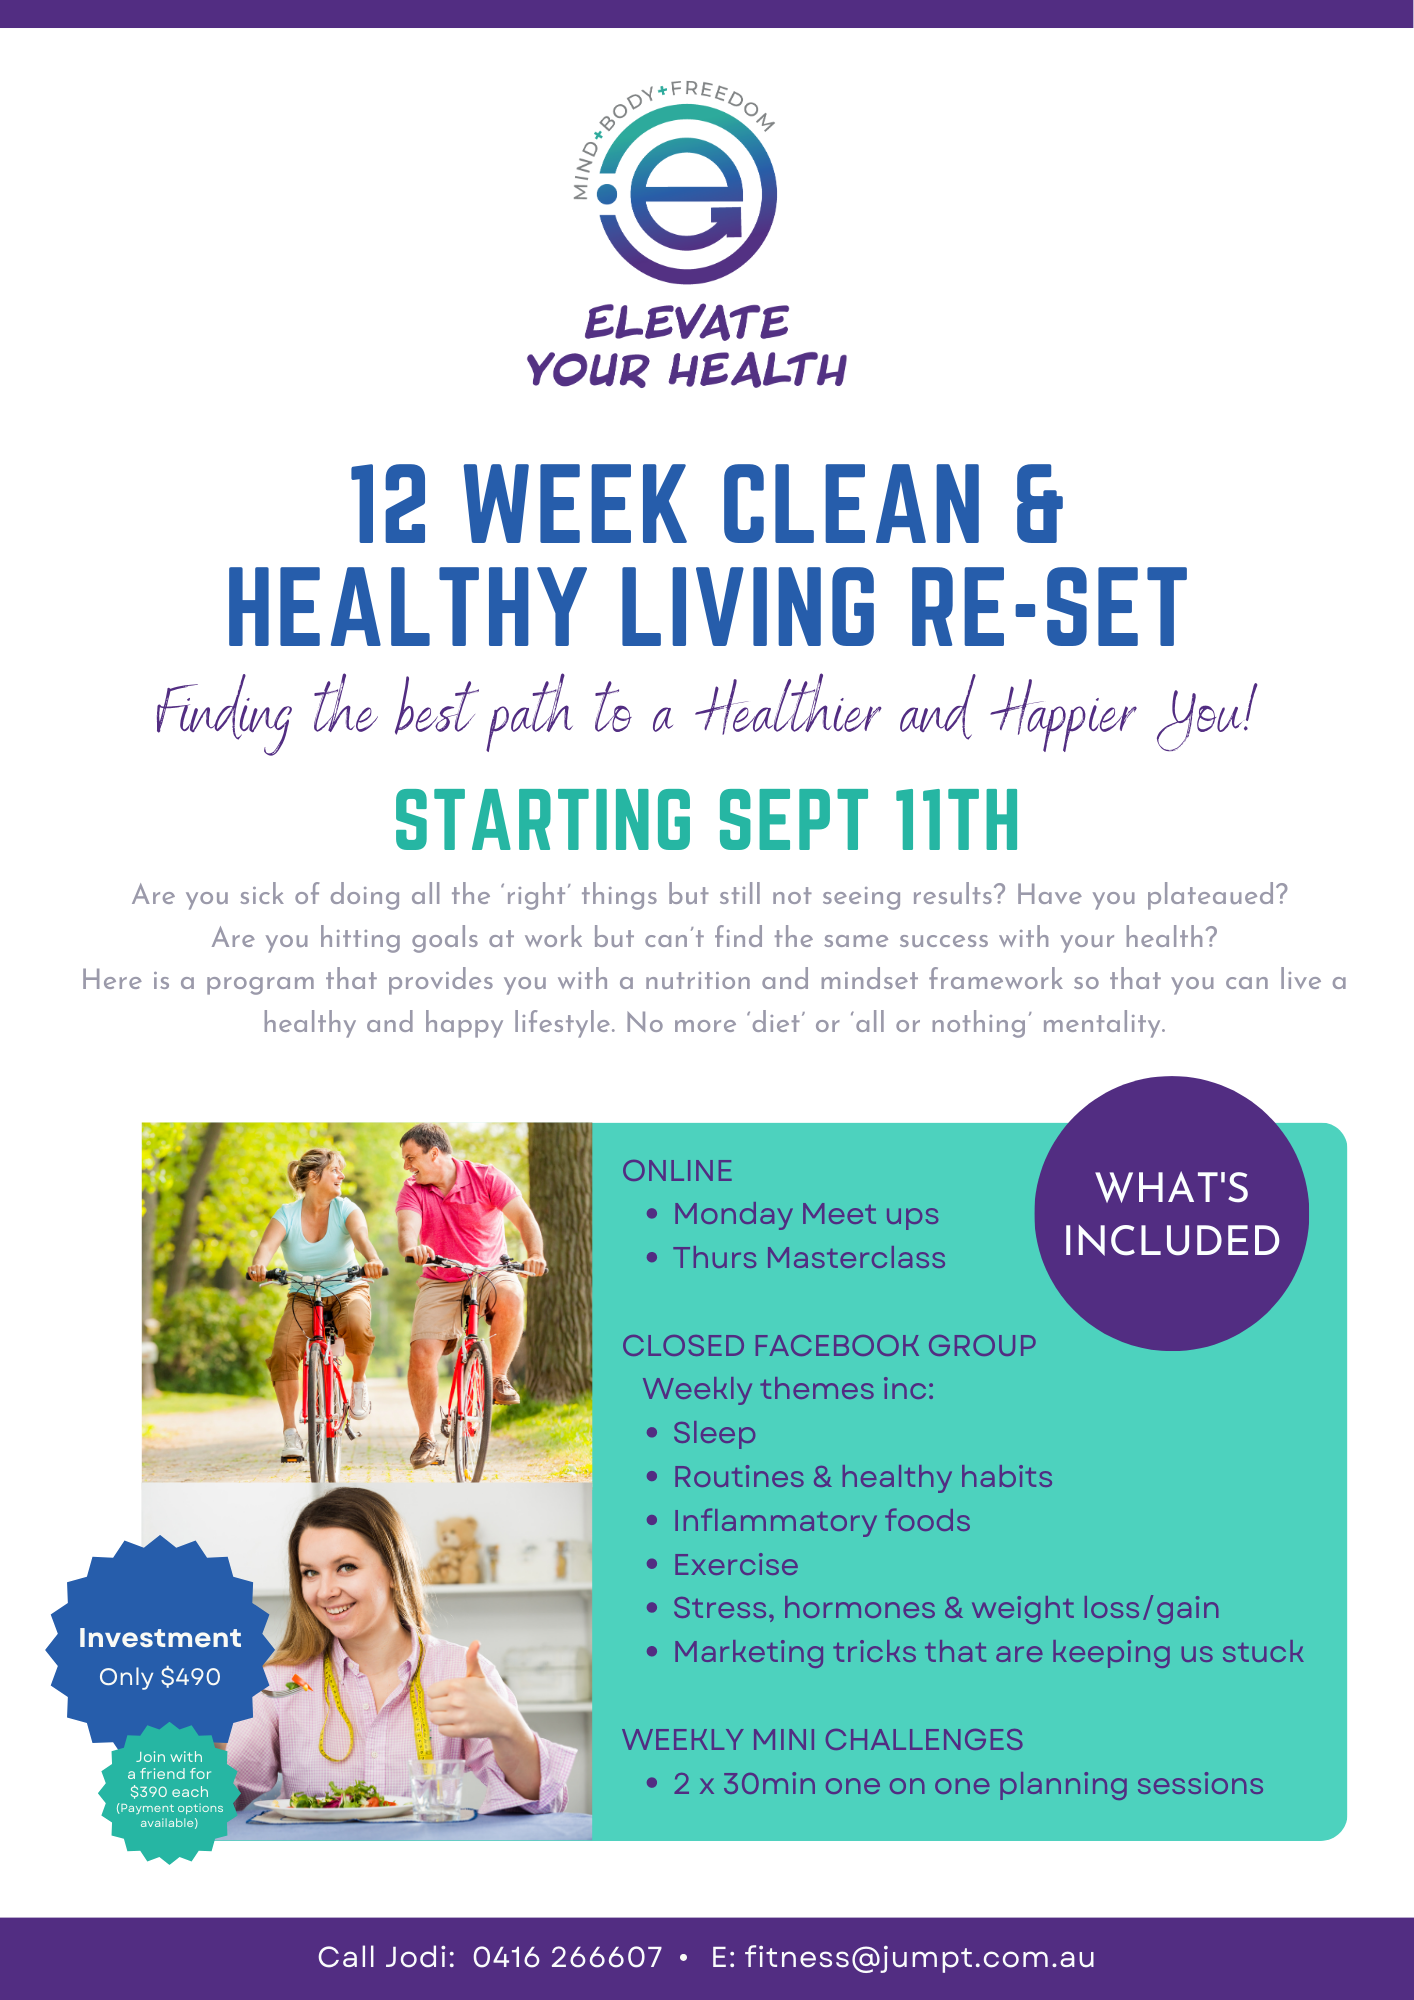 12 Week Healthy Living Re-set